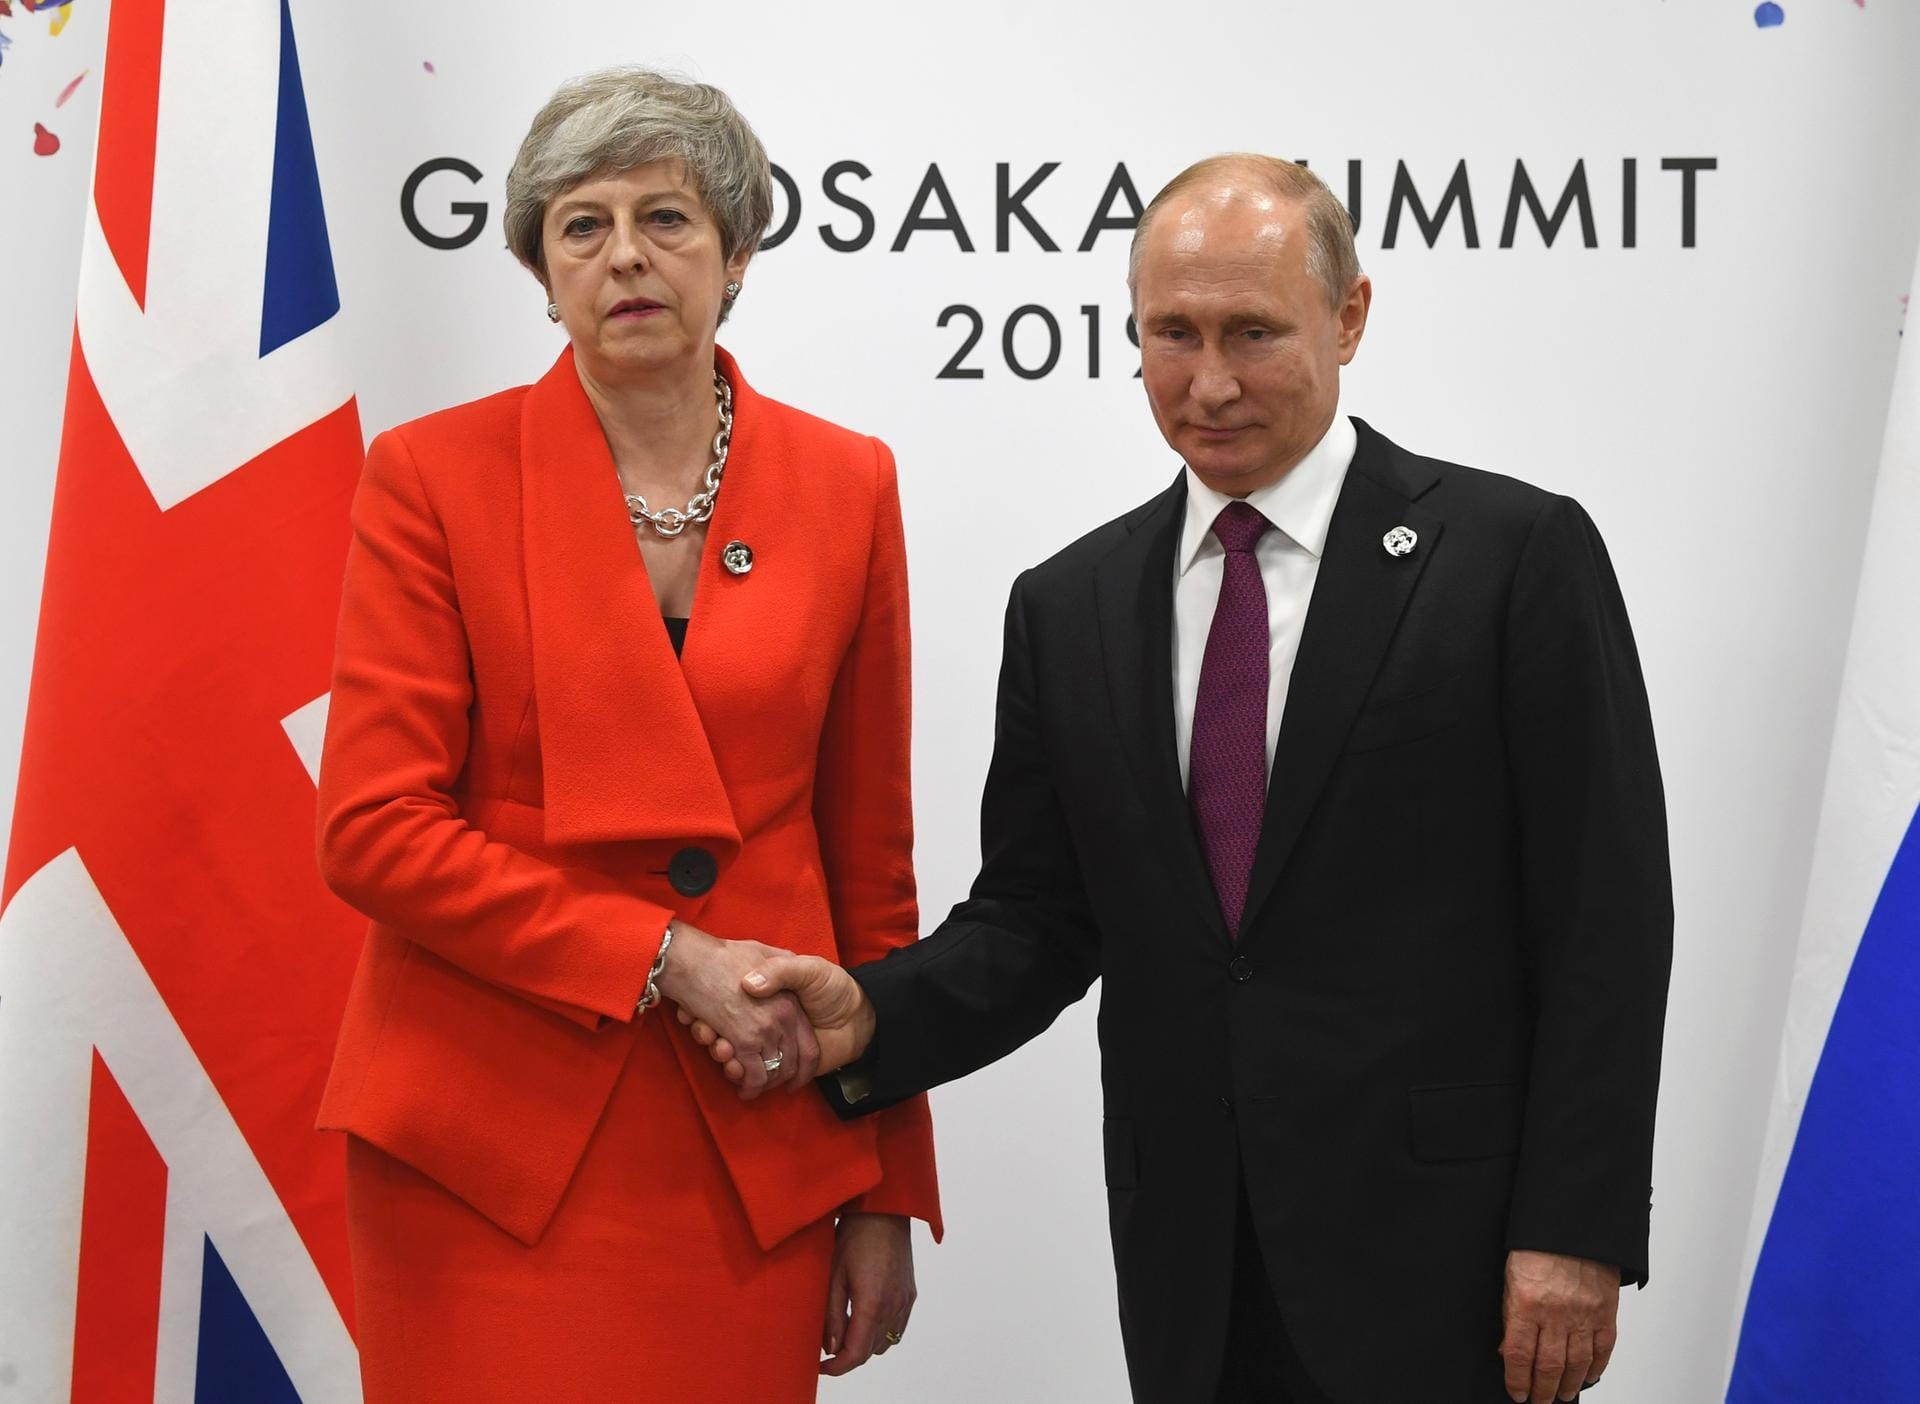 Mehr als frostig fiel die Begrüßung der britischen Premierministerin Theresa May für Wladimir Putin aus. Mit Blick auf das Giftgasattentat von Salisbury forderte sie Russland auf, sämtliche "verantwortungslosen und destabilisierenden" Aktivitäten zu beenden. Putin wies erneut jede Verantwortung von sich.